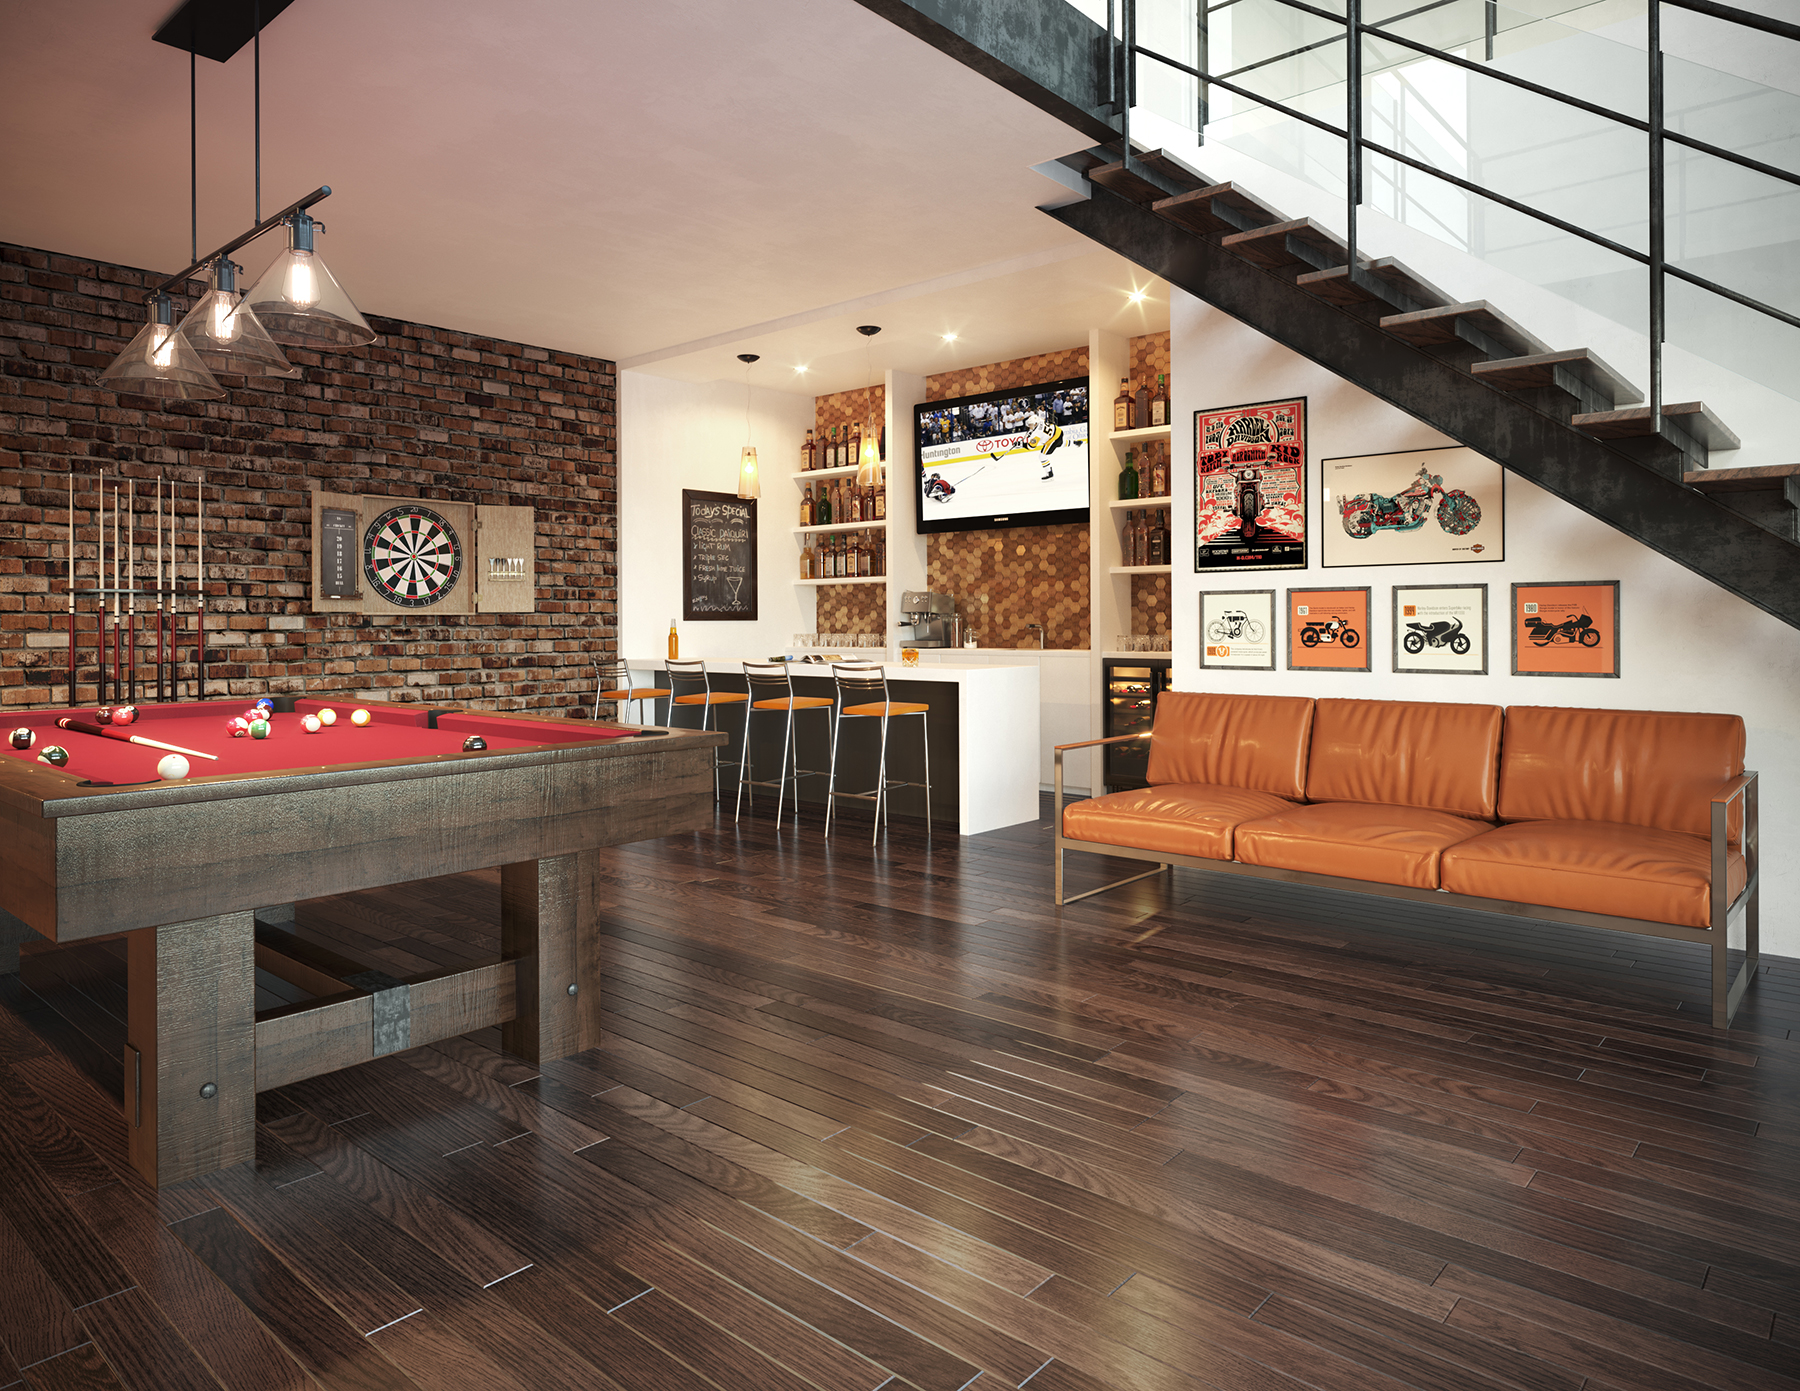 Salle de billard 3D, bar sous-sol, plancher, rendu photo-réaliste, 3d rendering, Montréal, Québec